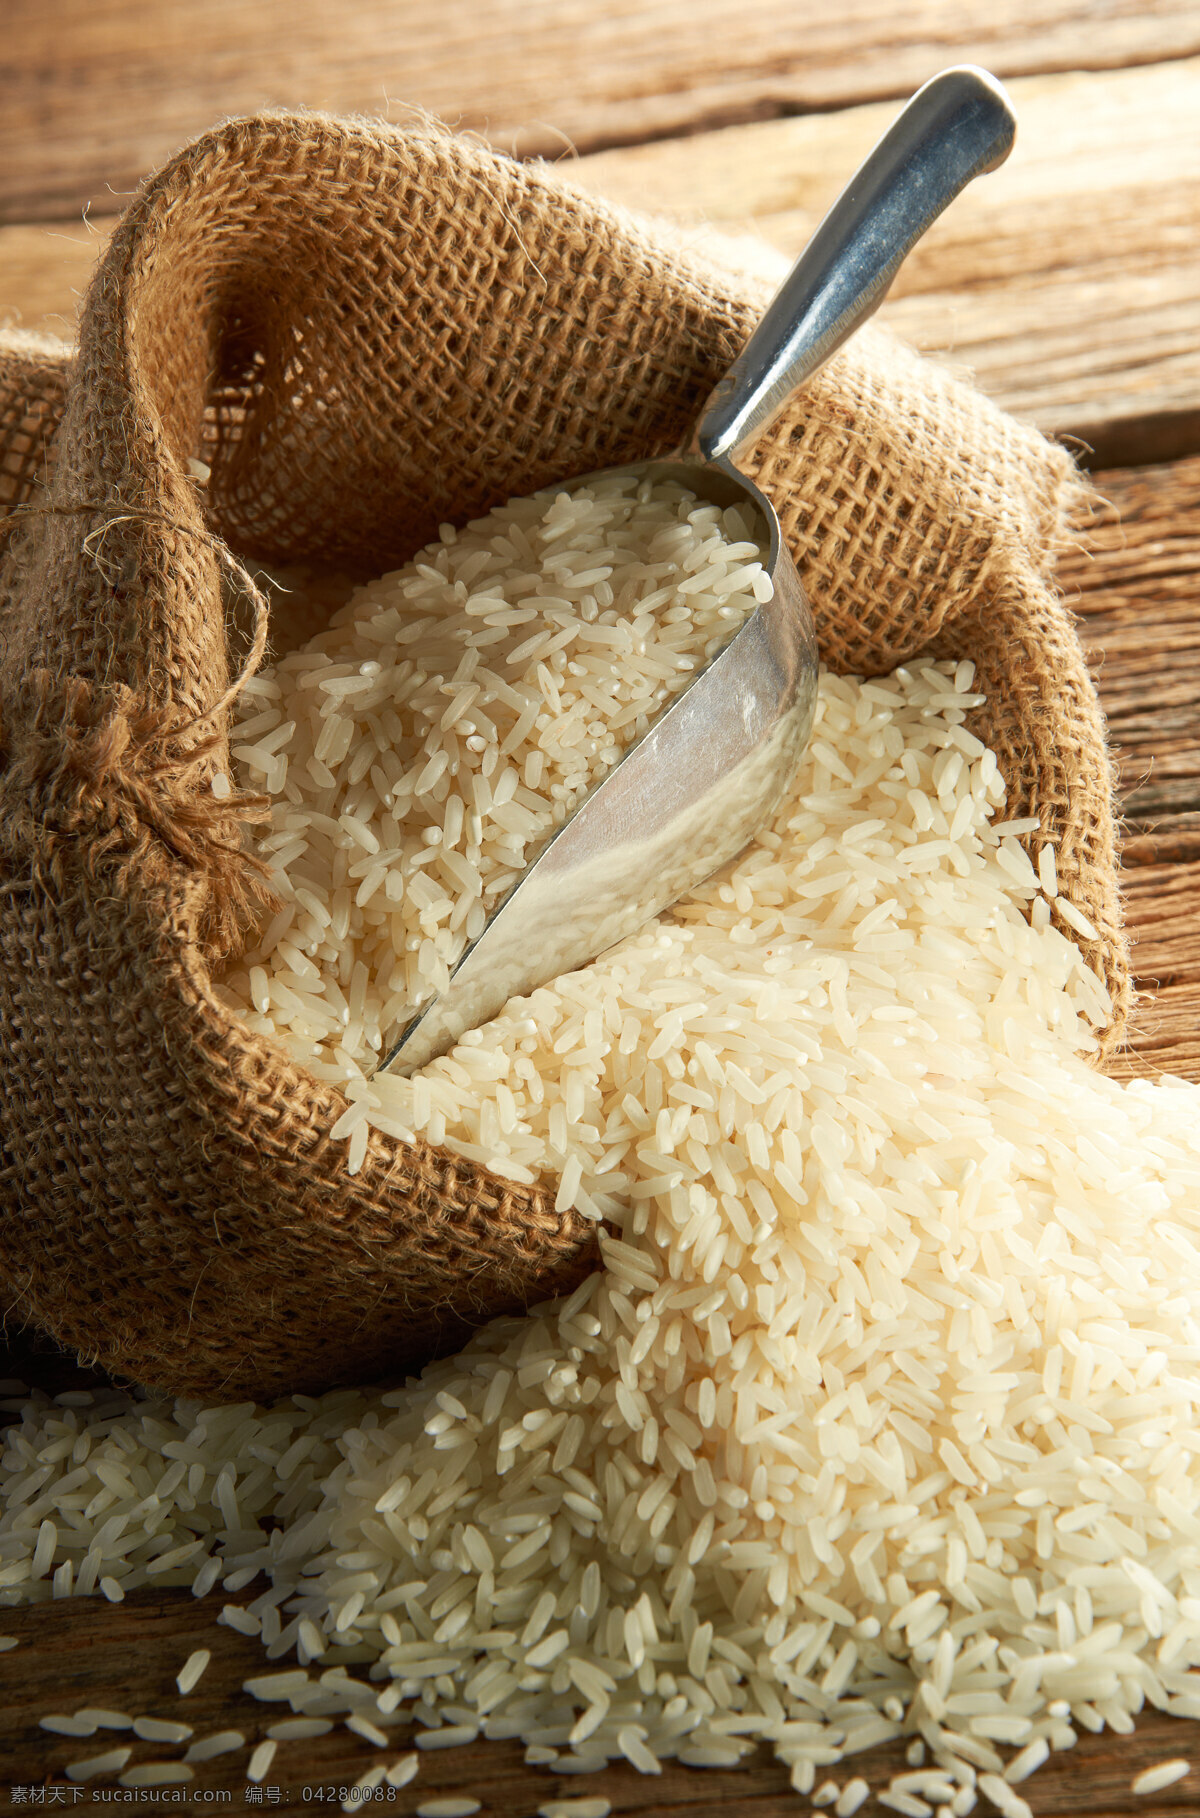 优质大米 大米 优质 美味 健康 营养 食物原料 餐饮美食